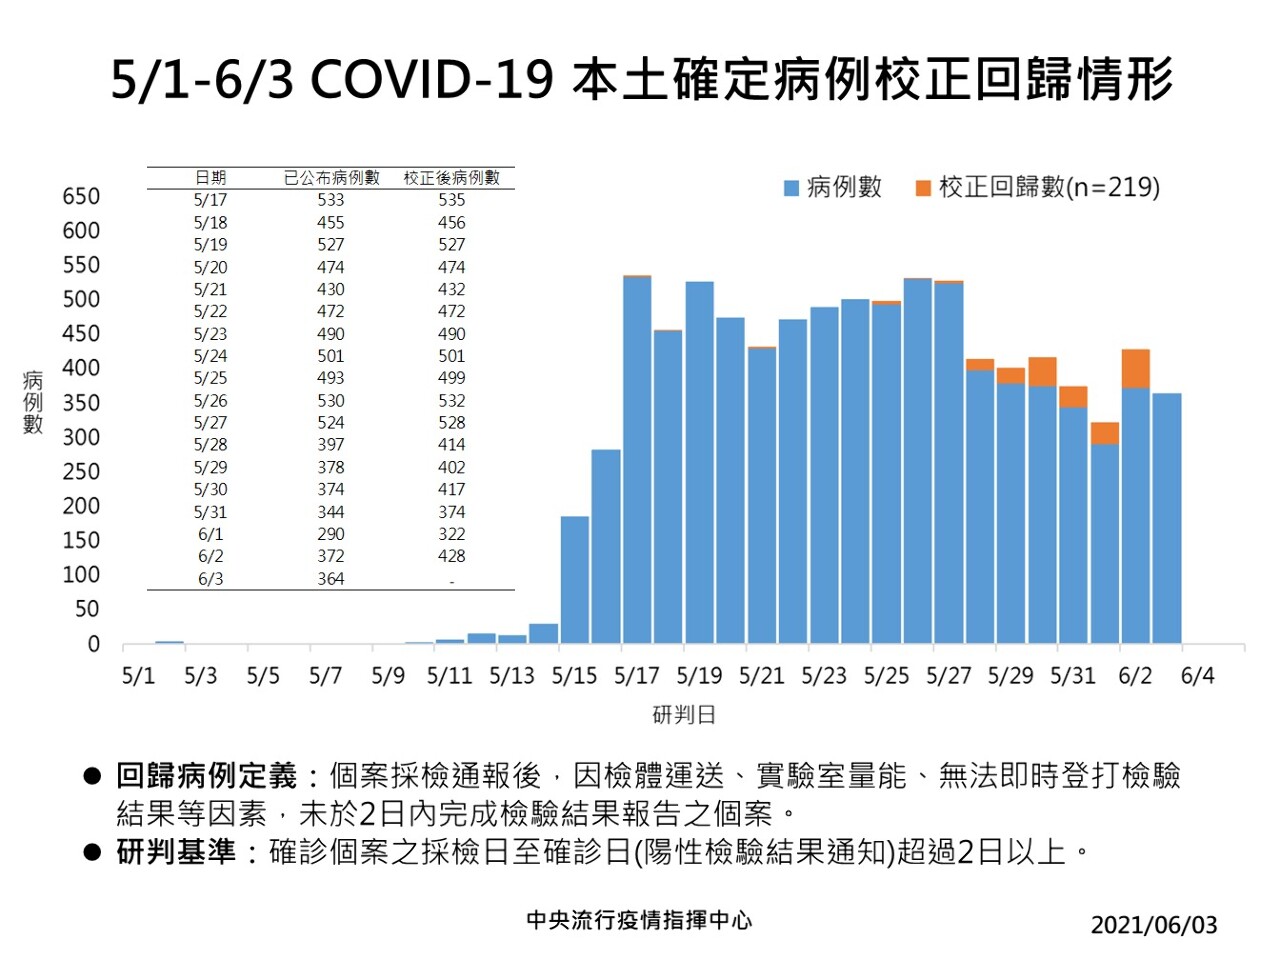 Covid-19 : 585 nouveaux cas confirmés dont 216 cas rétroactifs